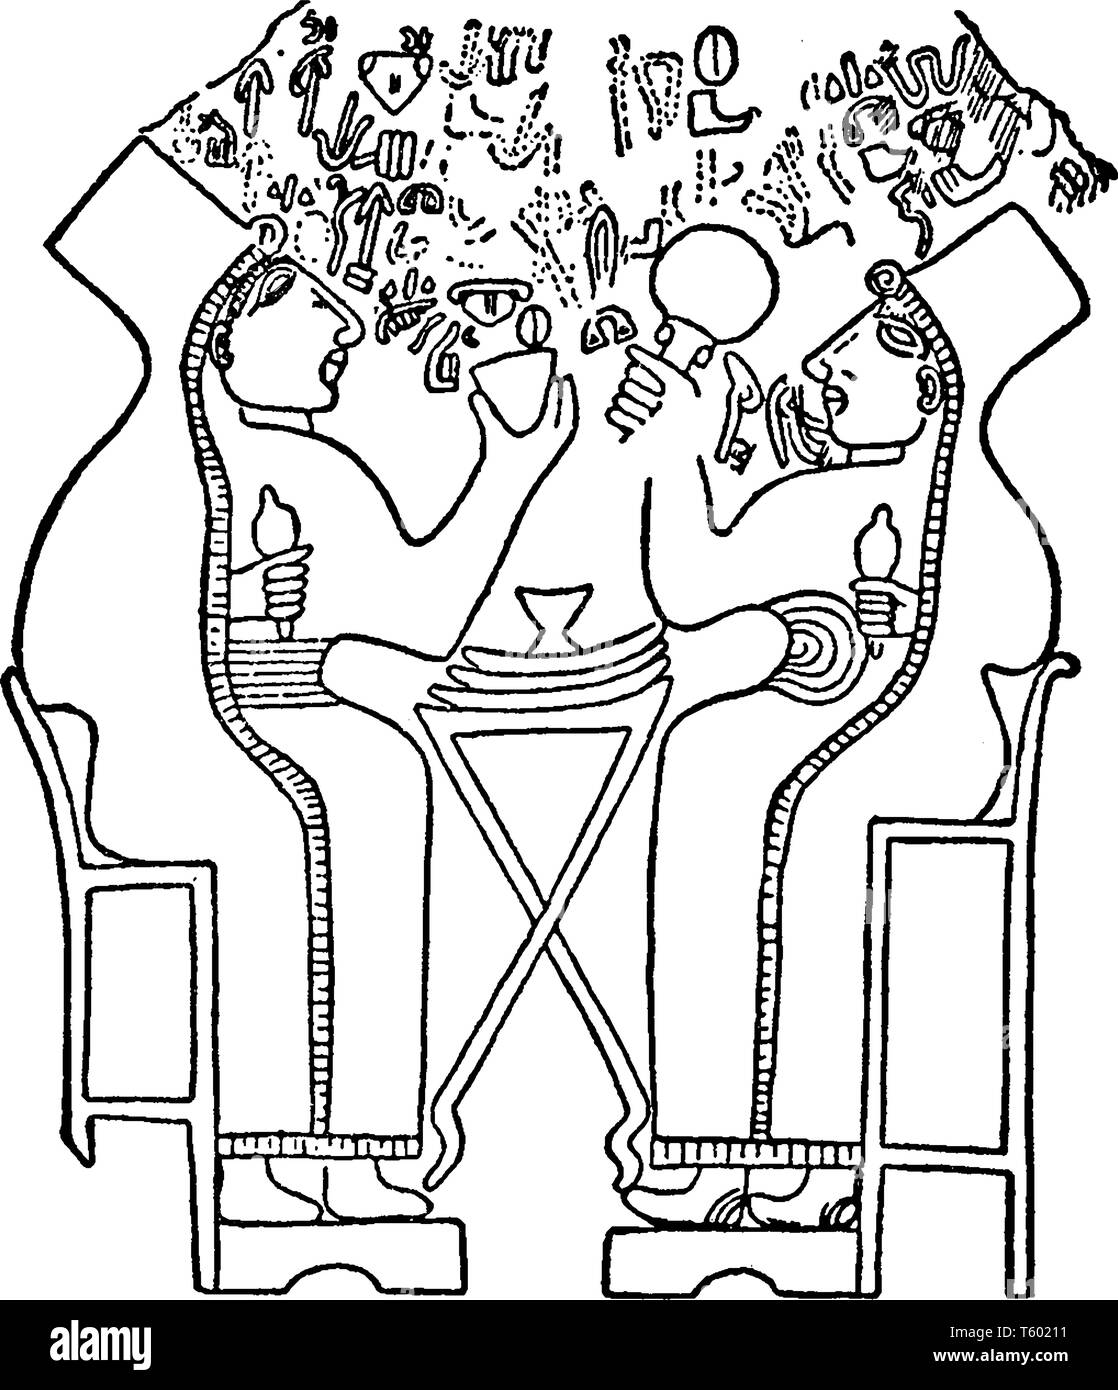 Le donne hittite era un antico anatolica persone che parlavano una lingua Hittita del ramo anatolico dell'Indo lingua europea famiglia, linea vintage Illustrazione Vettoriale